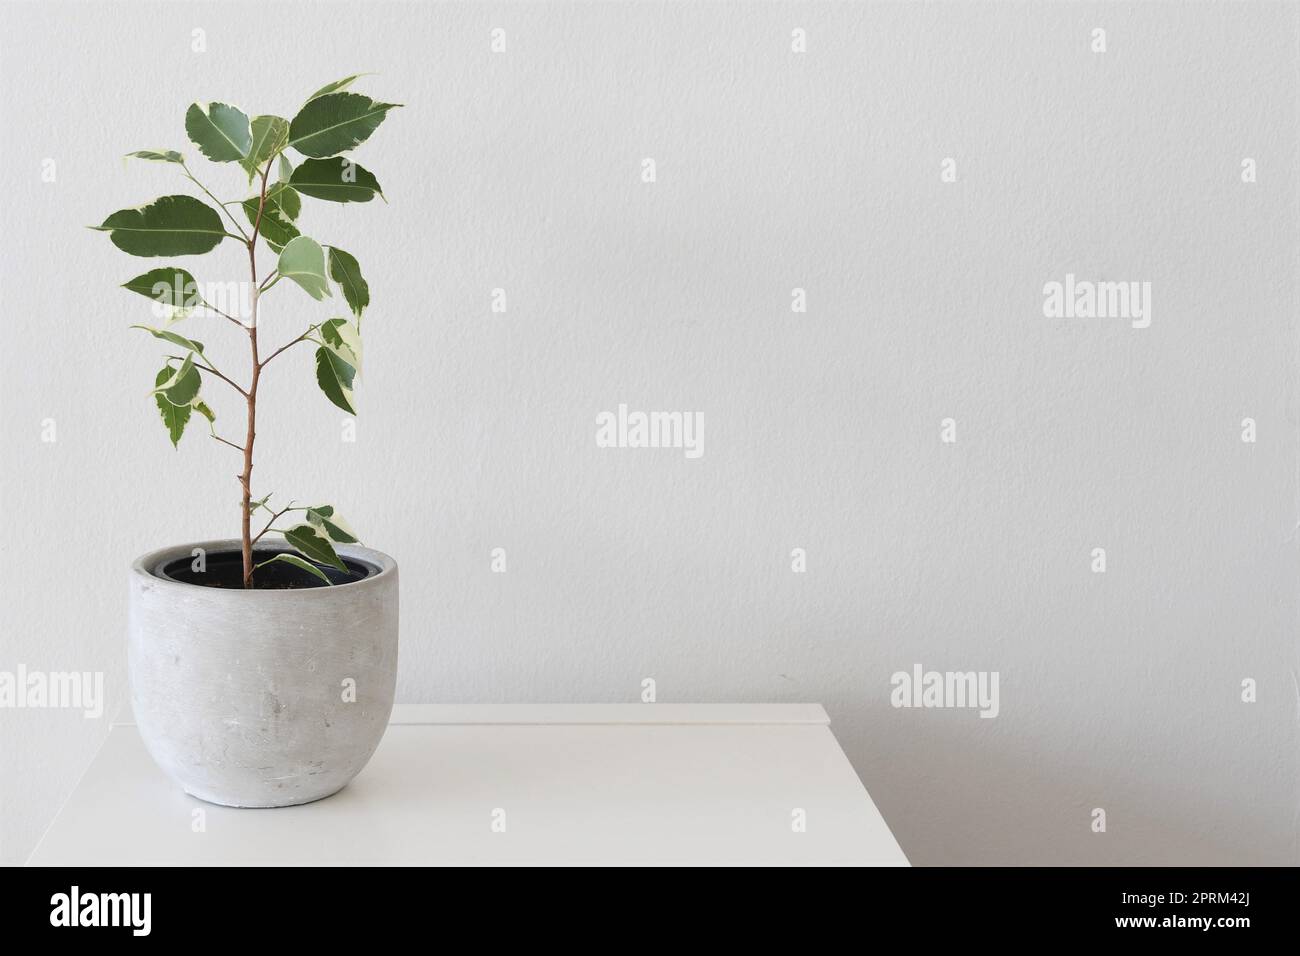 Ficus benjamina variegata, fico piangente variegato, pianta da casa con foglie bianche e verdi, isolata su fondo bianco. Orientamento orizzontale. Foto Stock